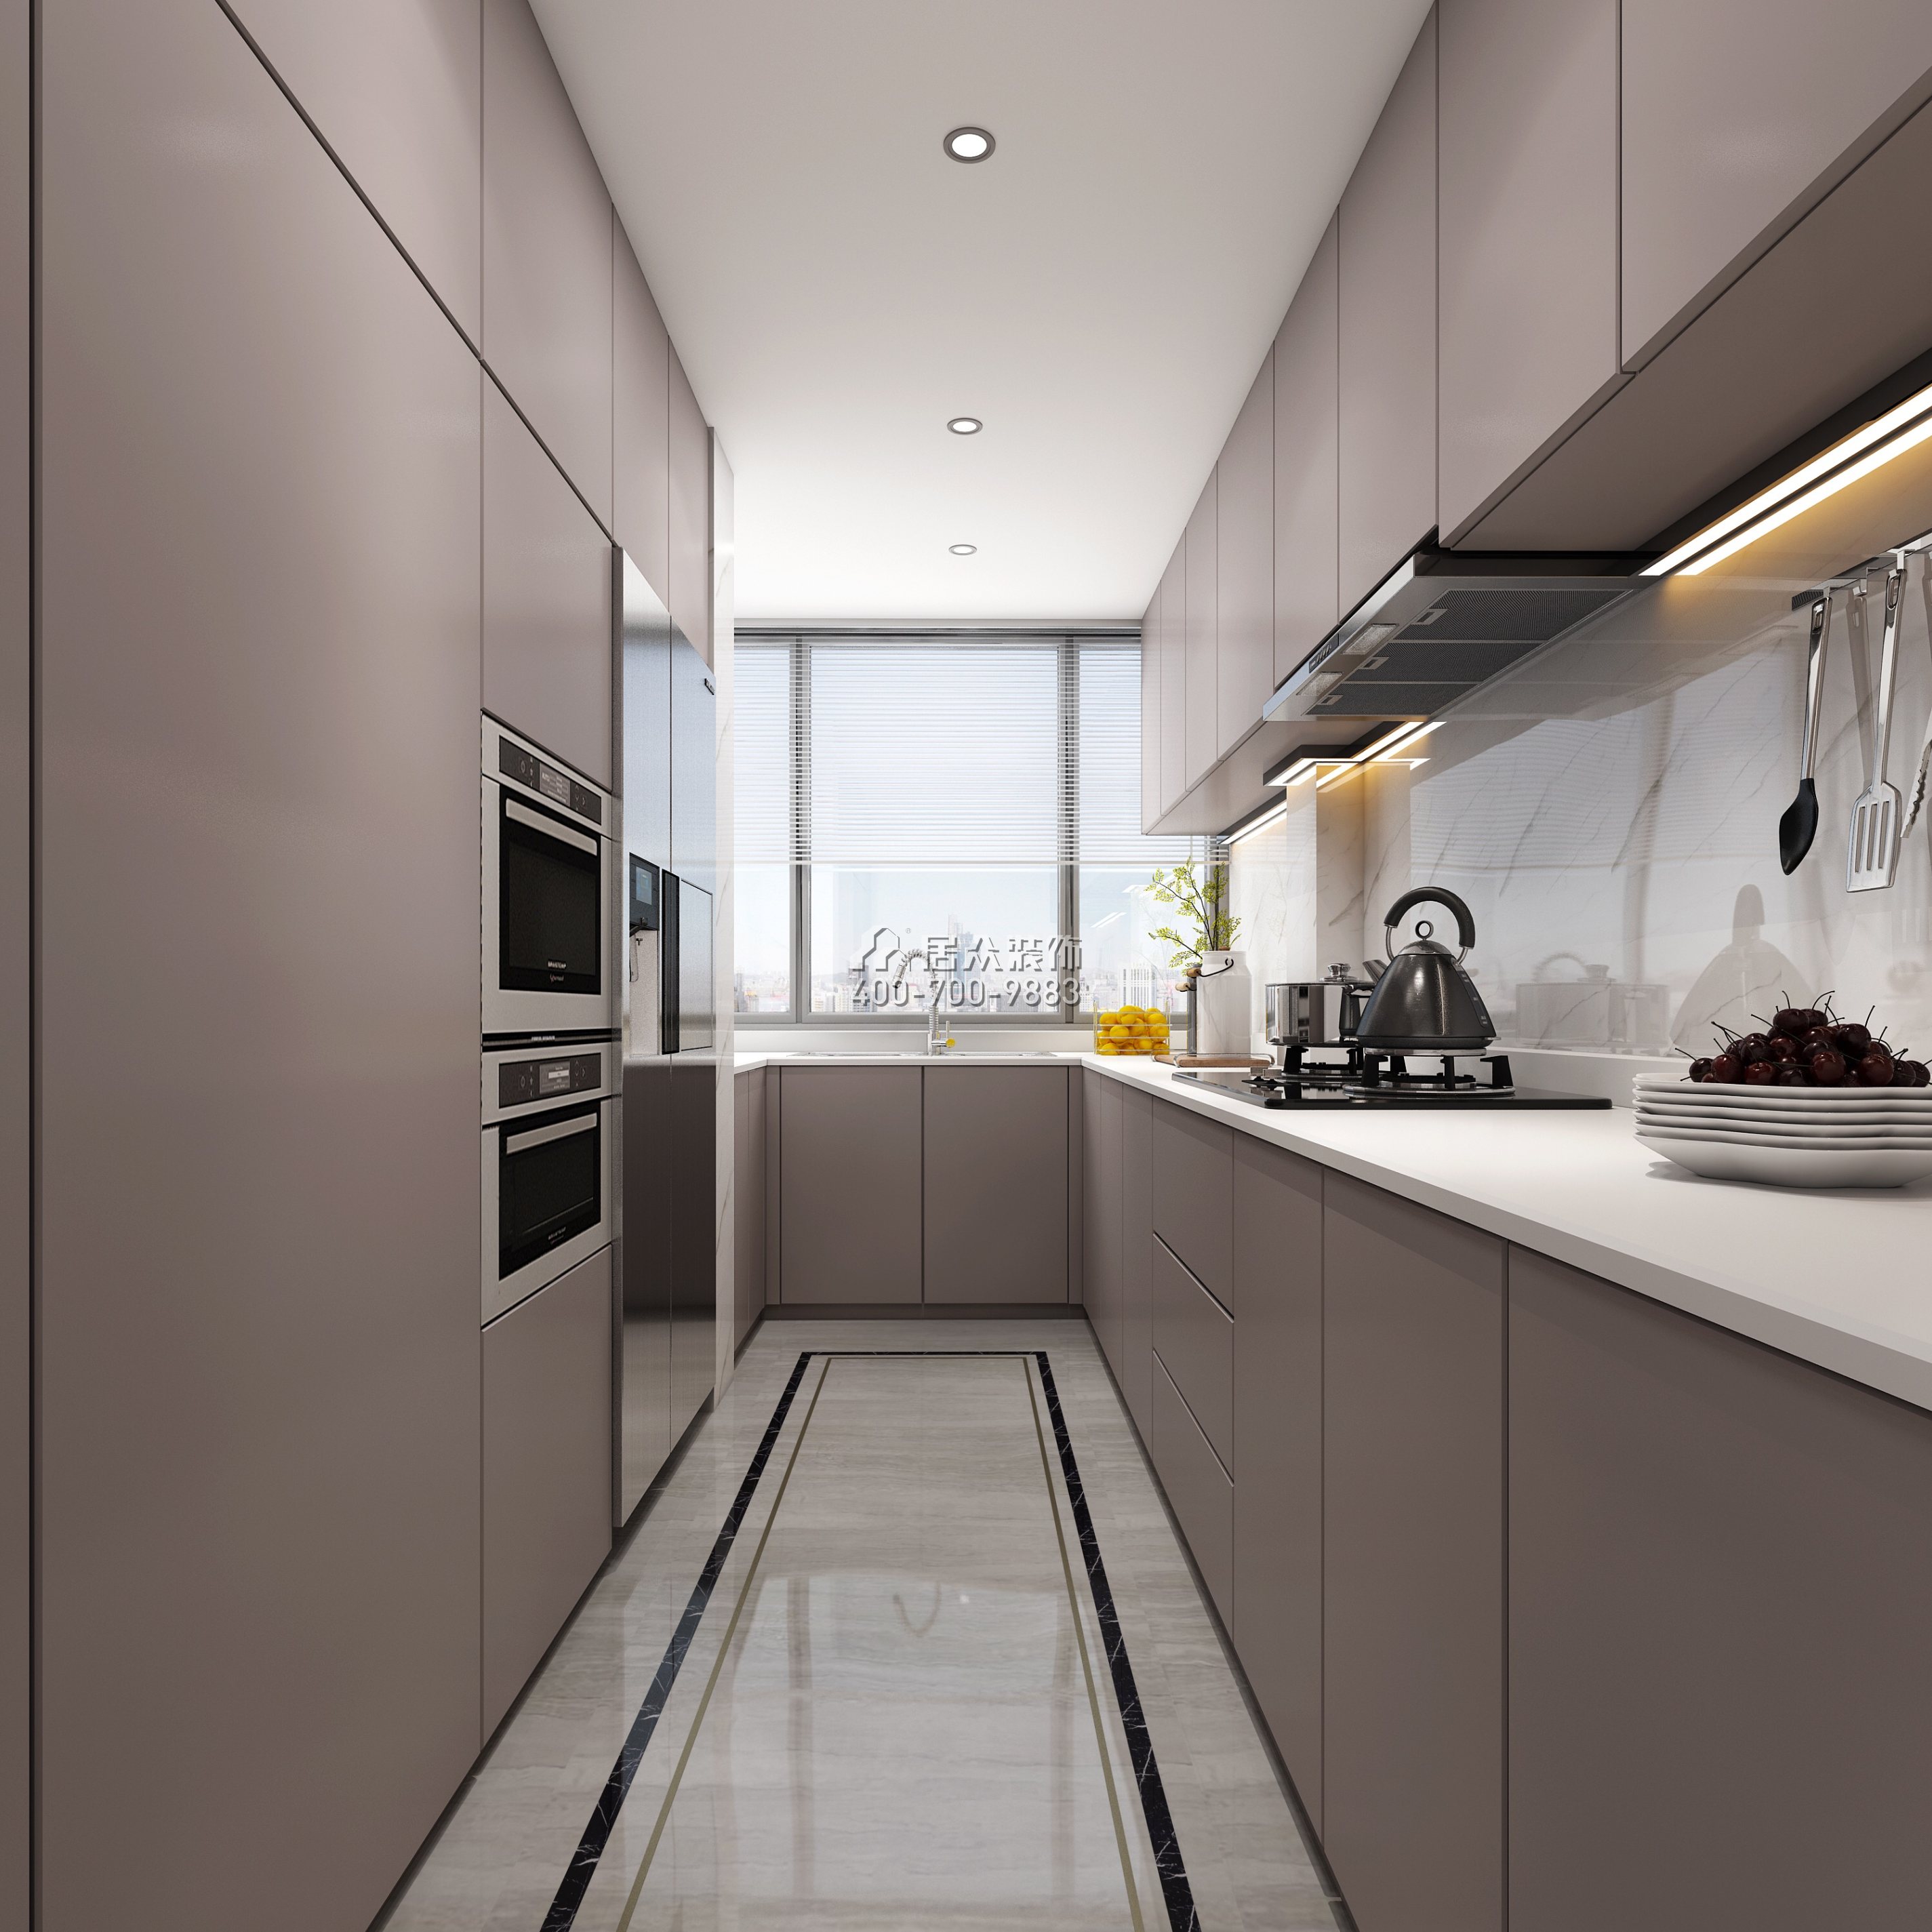 聯投東方華府二期150平方米現代簡約風格平層戶型廚房裝修效果圖